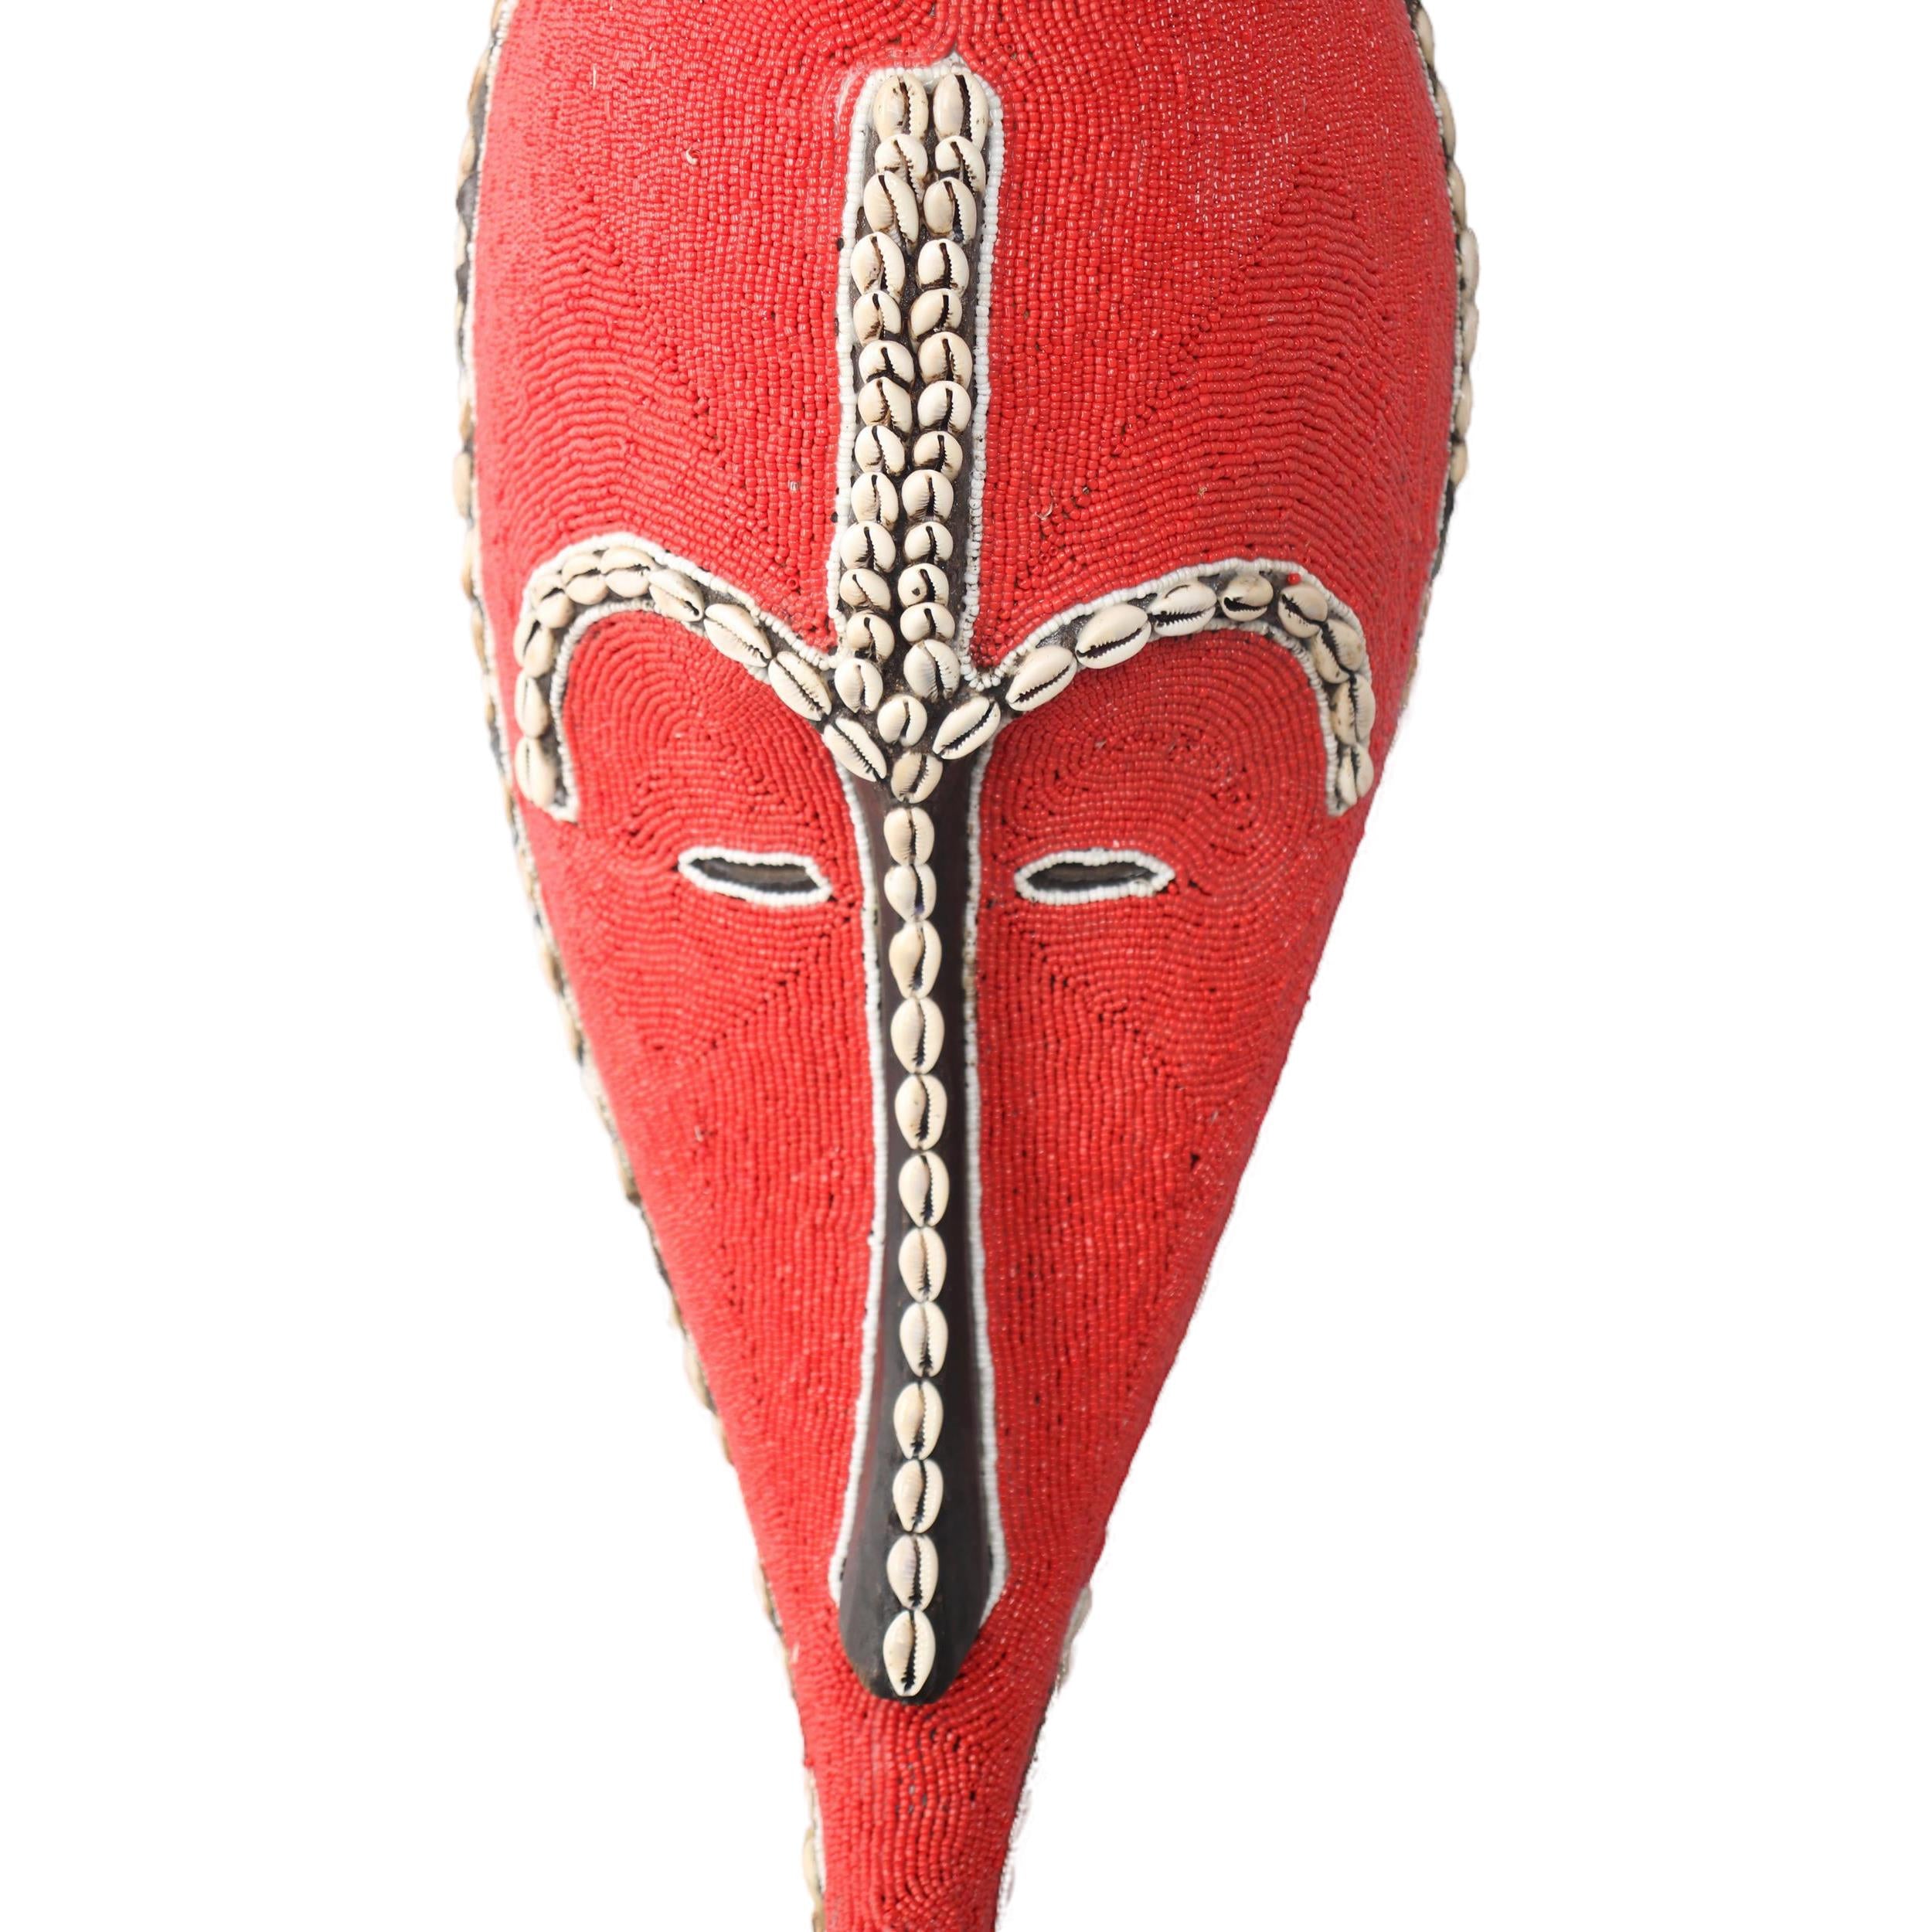 Fang Tribe Mask ~19.7" Tall - Mask